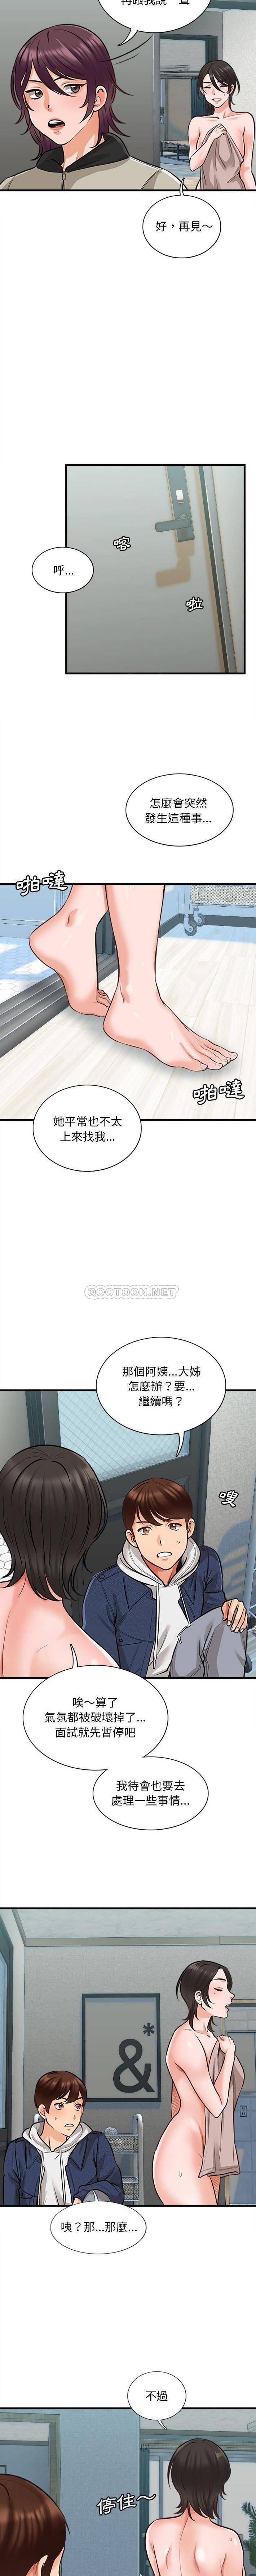 韩国污漫画 幸福公寓 第4话 6